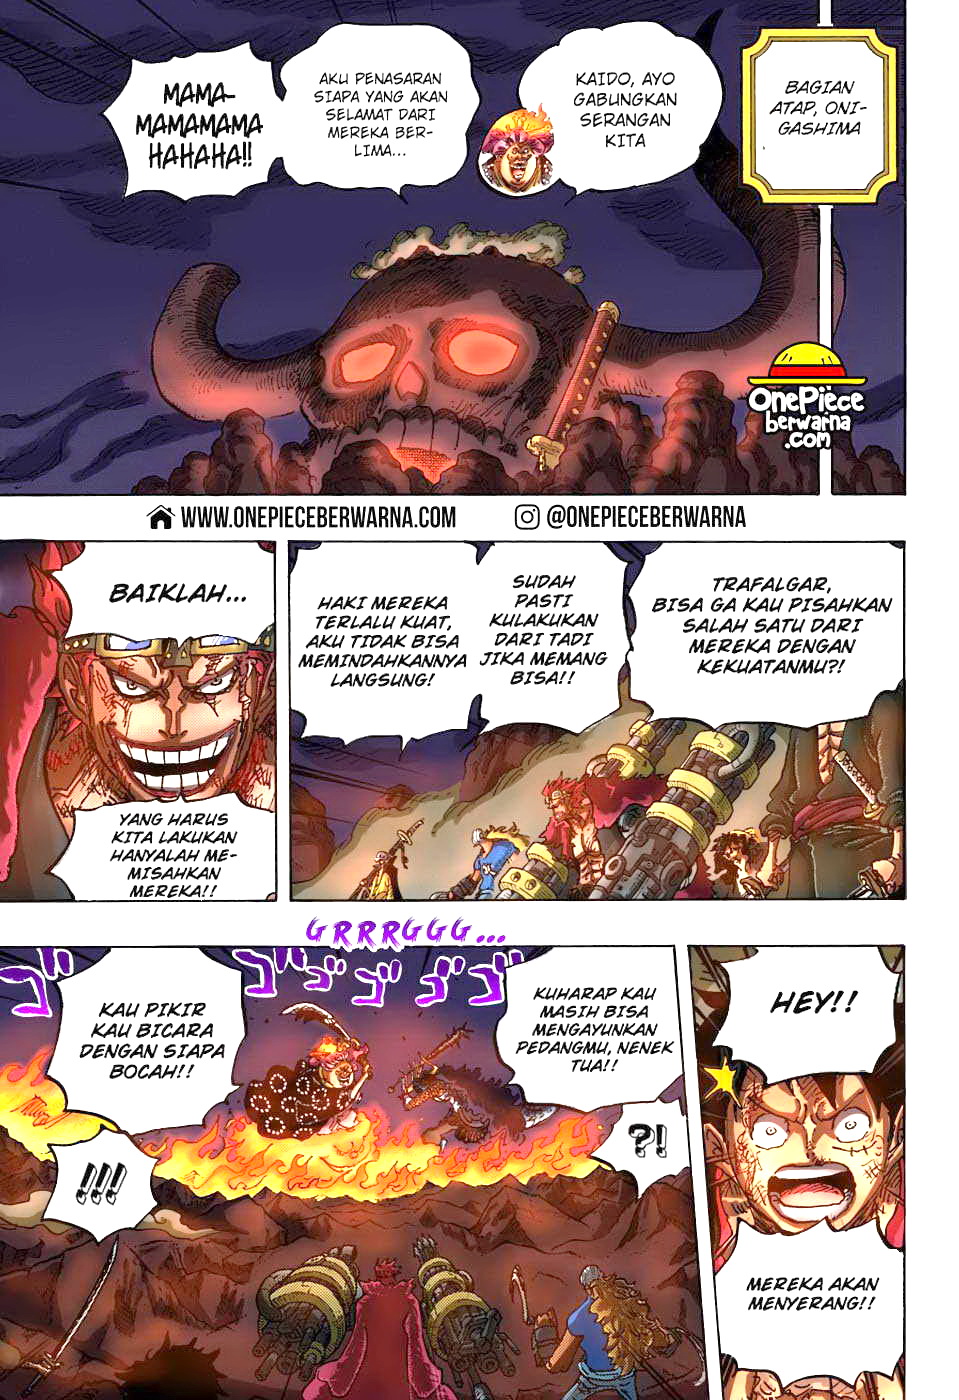 One Piece Berwarna Chapter 1009